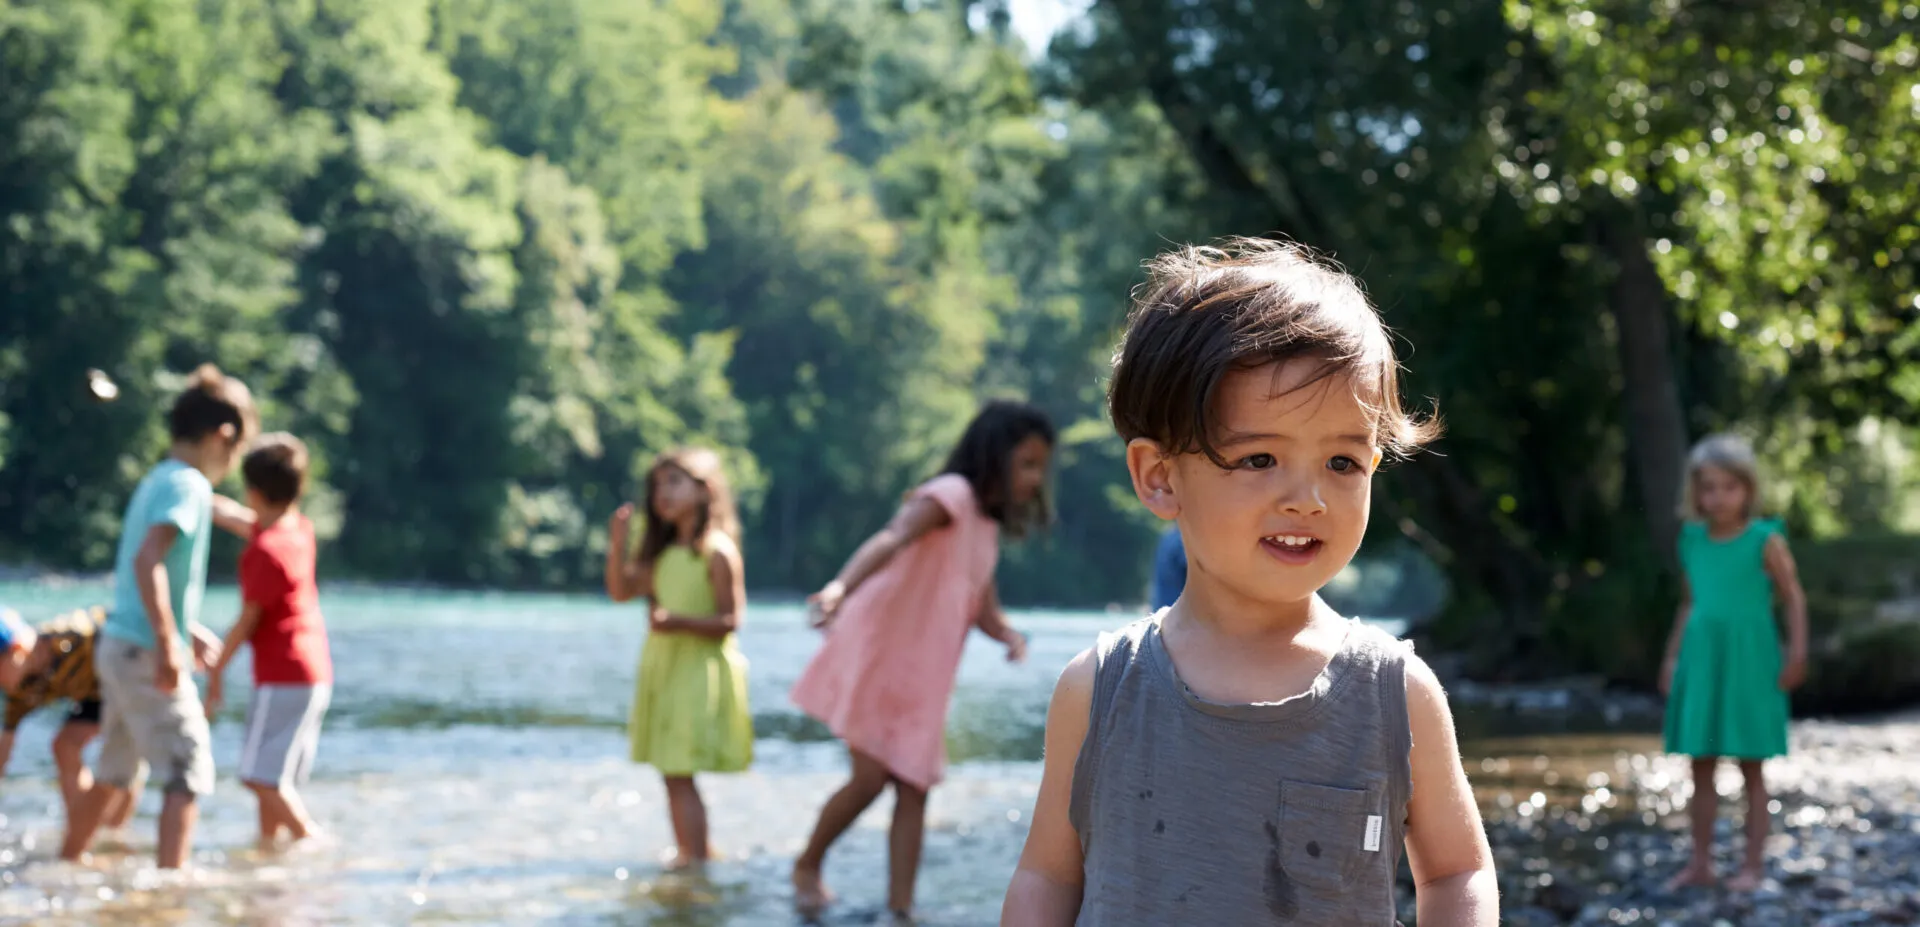 ads&figures fördert digitalen Kinderschutz in der Schweiz